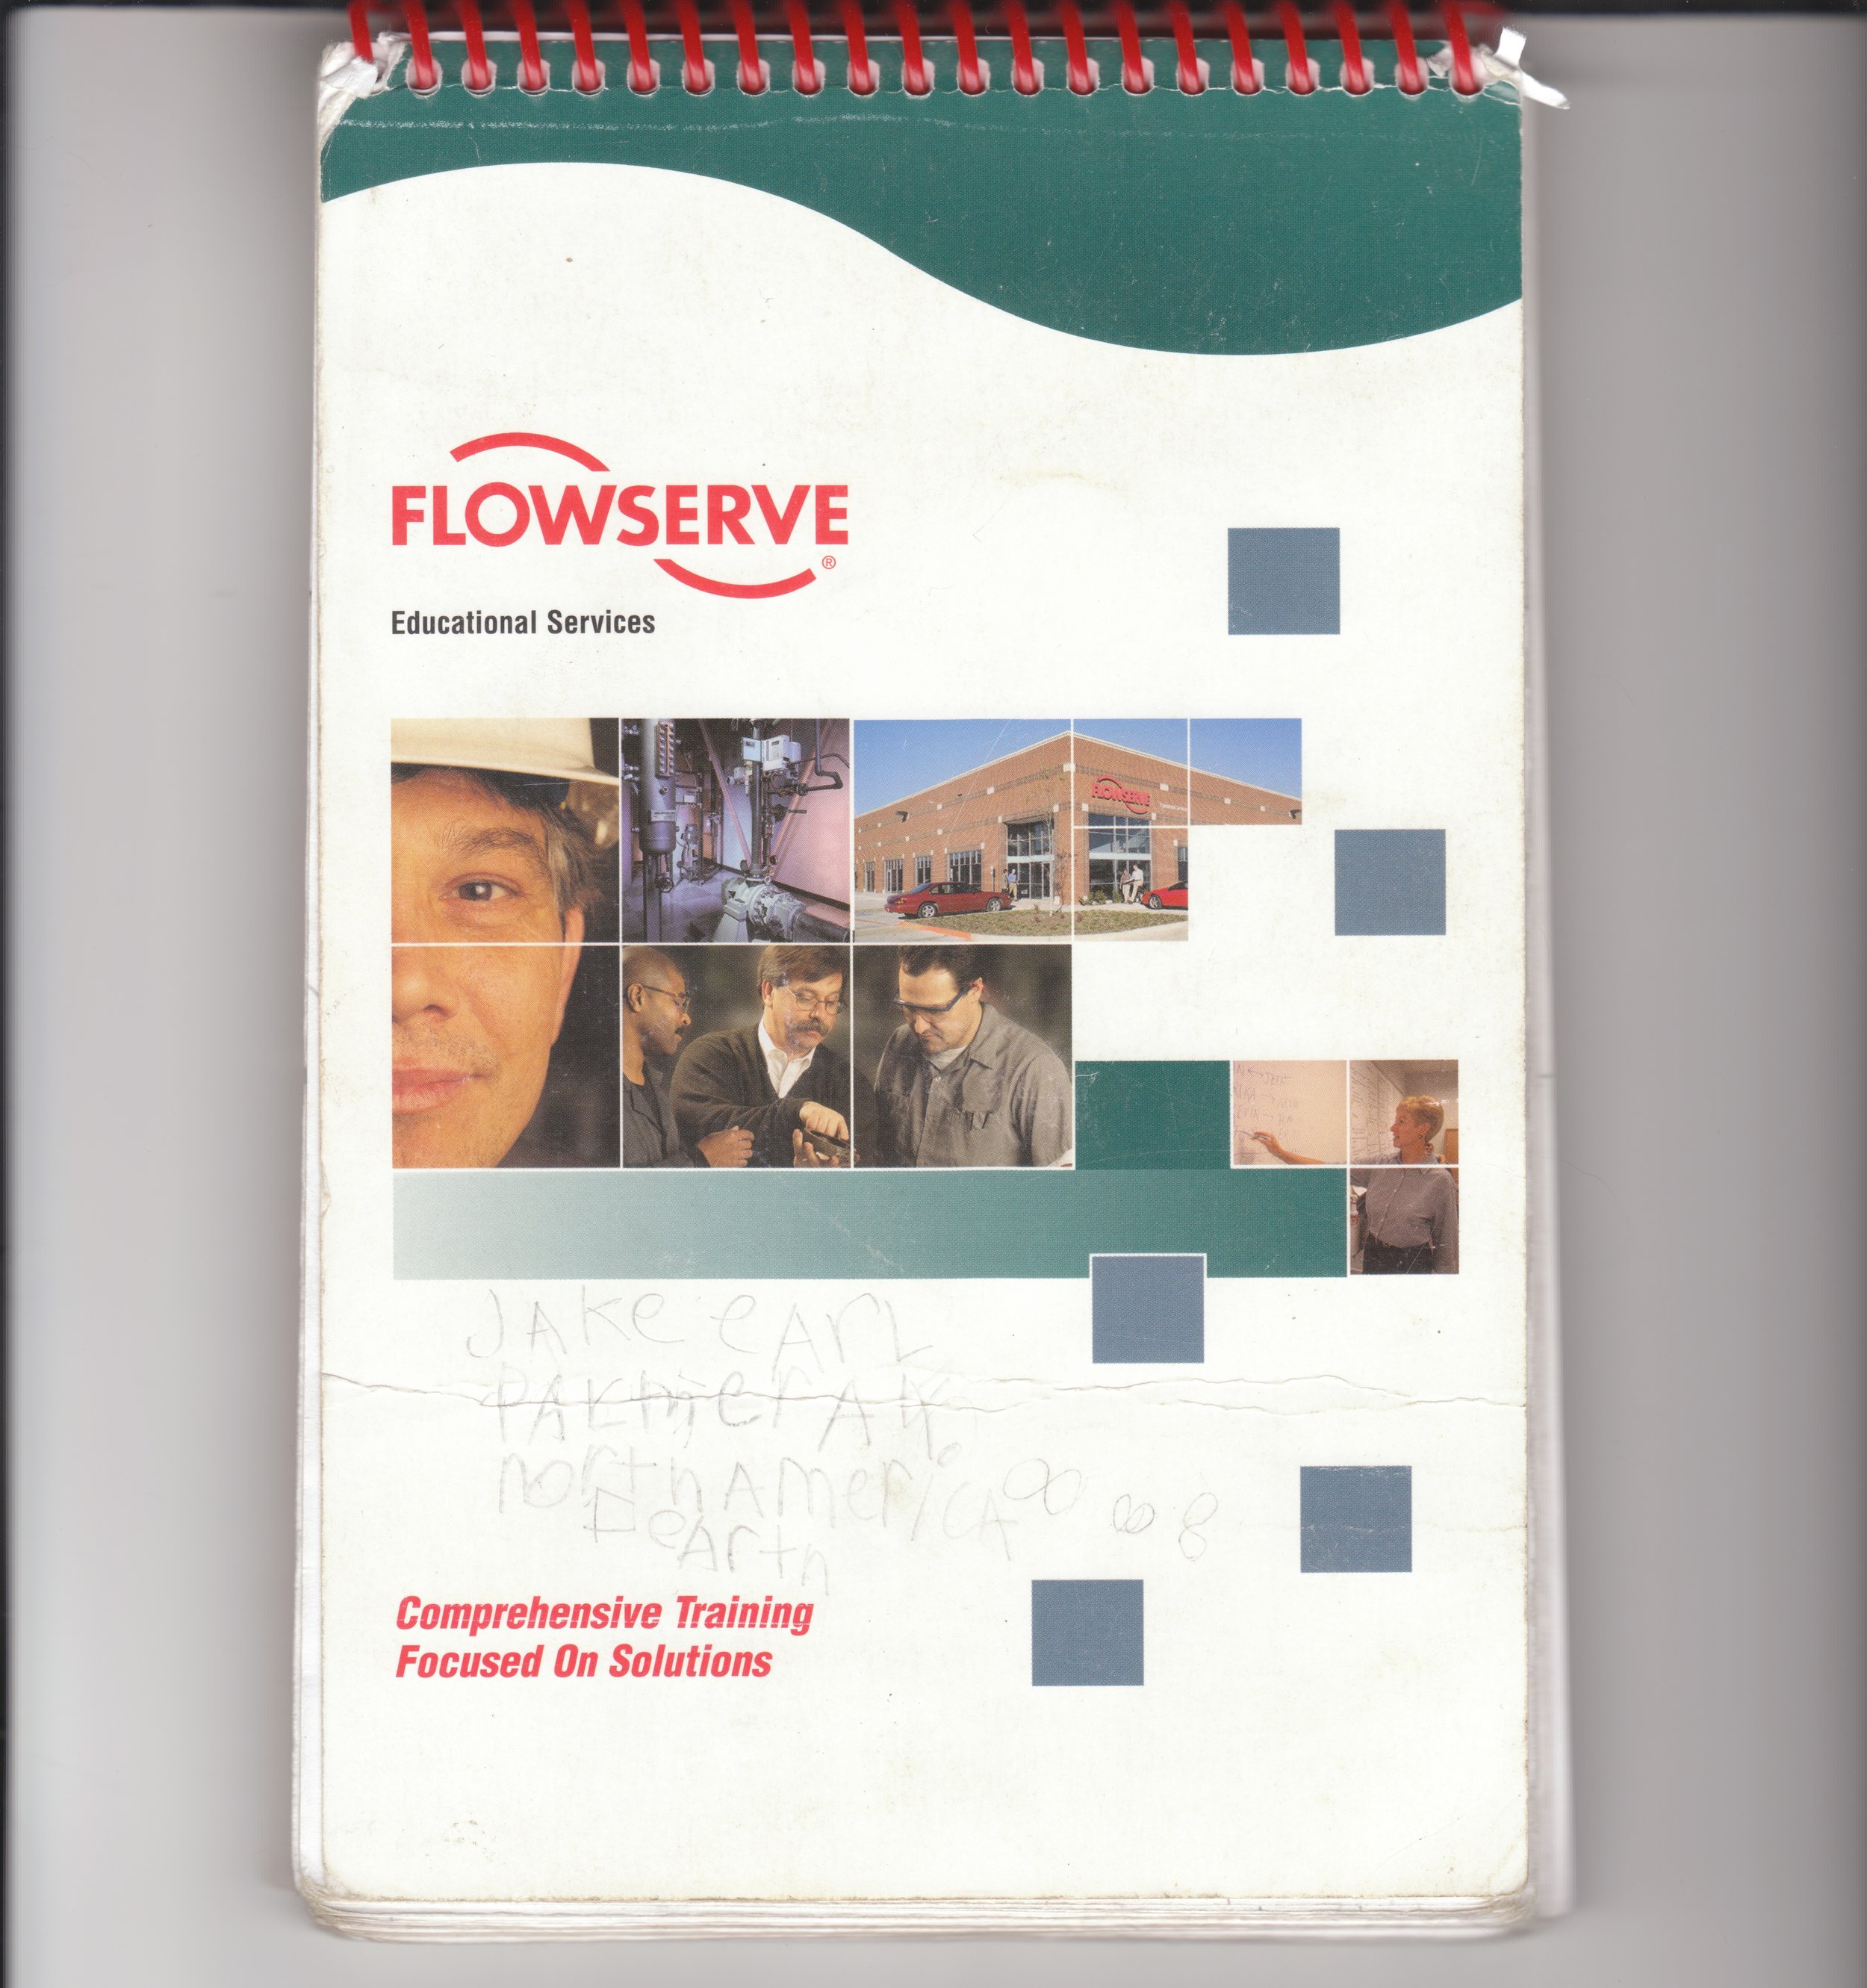 &nbsp;Flowserve (undated, c. 2003, 2004)